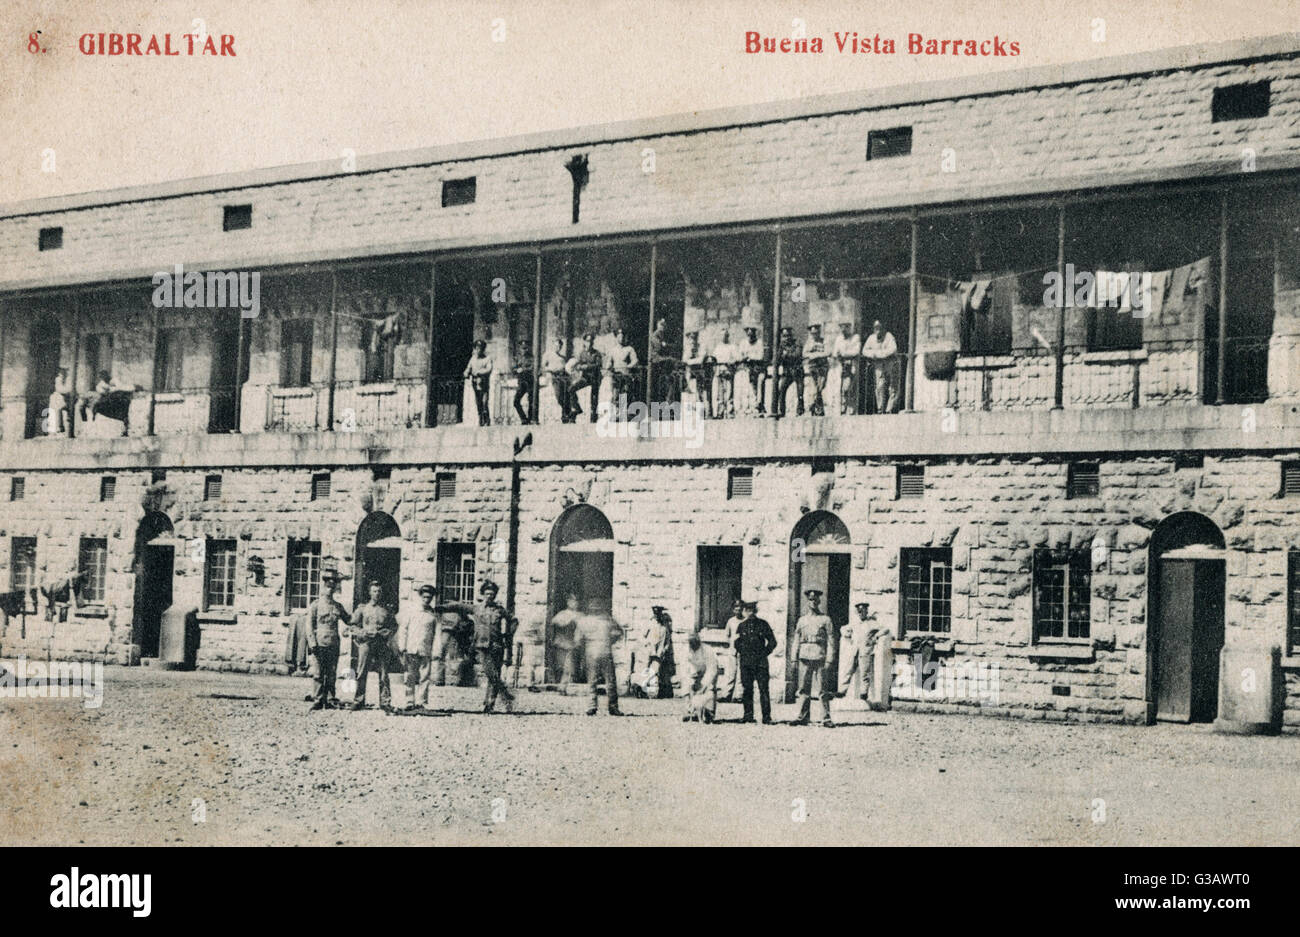 Buena Vista Barracks, Gibraltar Stock Photo